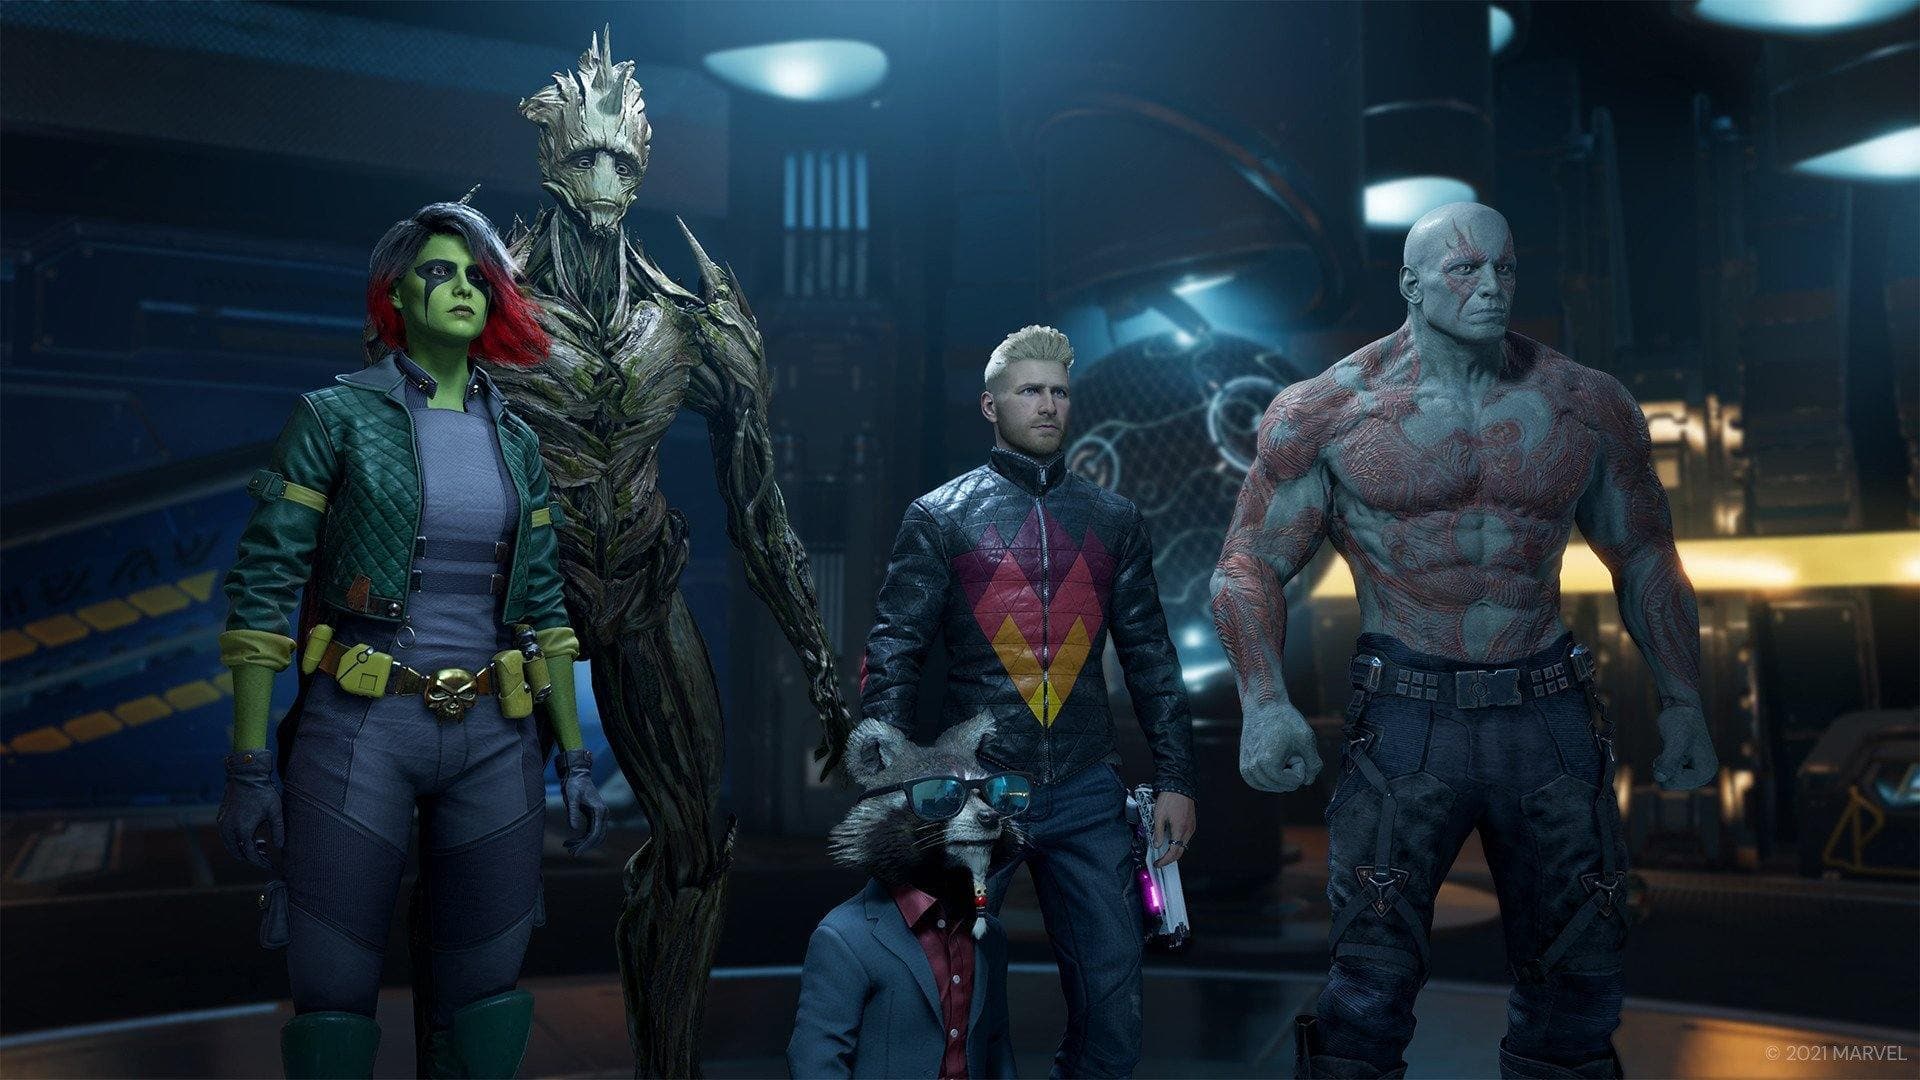 Marvel's Guardians of the Galaxy - Xbox - EXON - גיימינג ותוכנות - משחקים ותוכנות למחשב ולאקס בוקס!